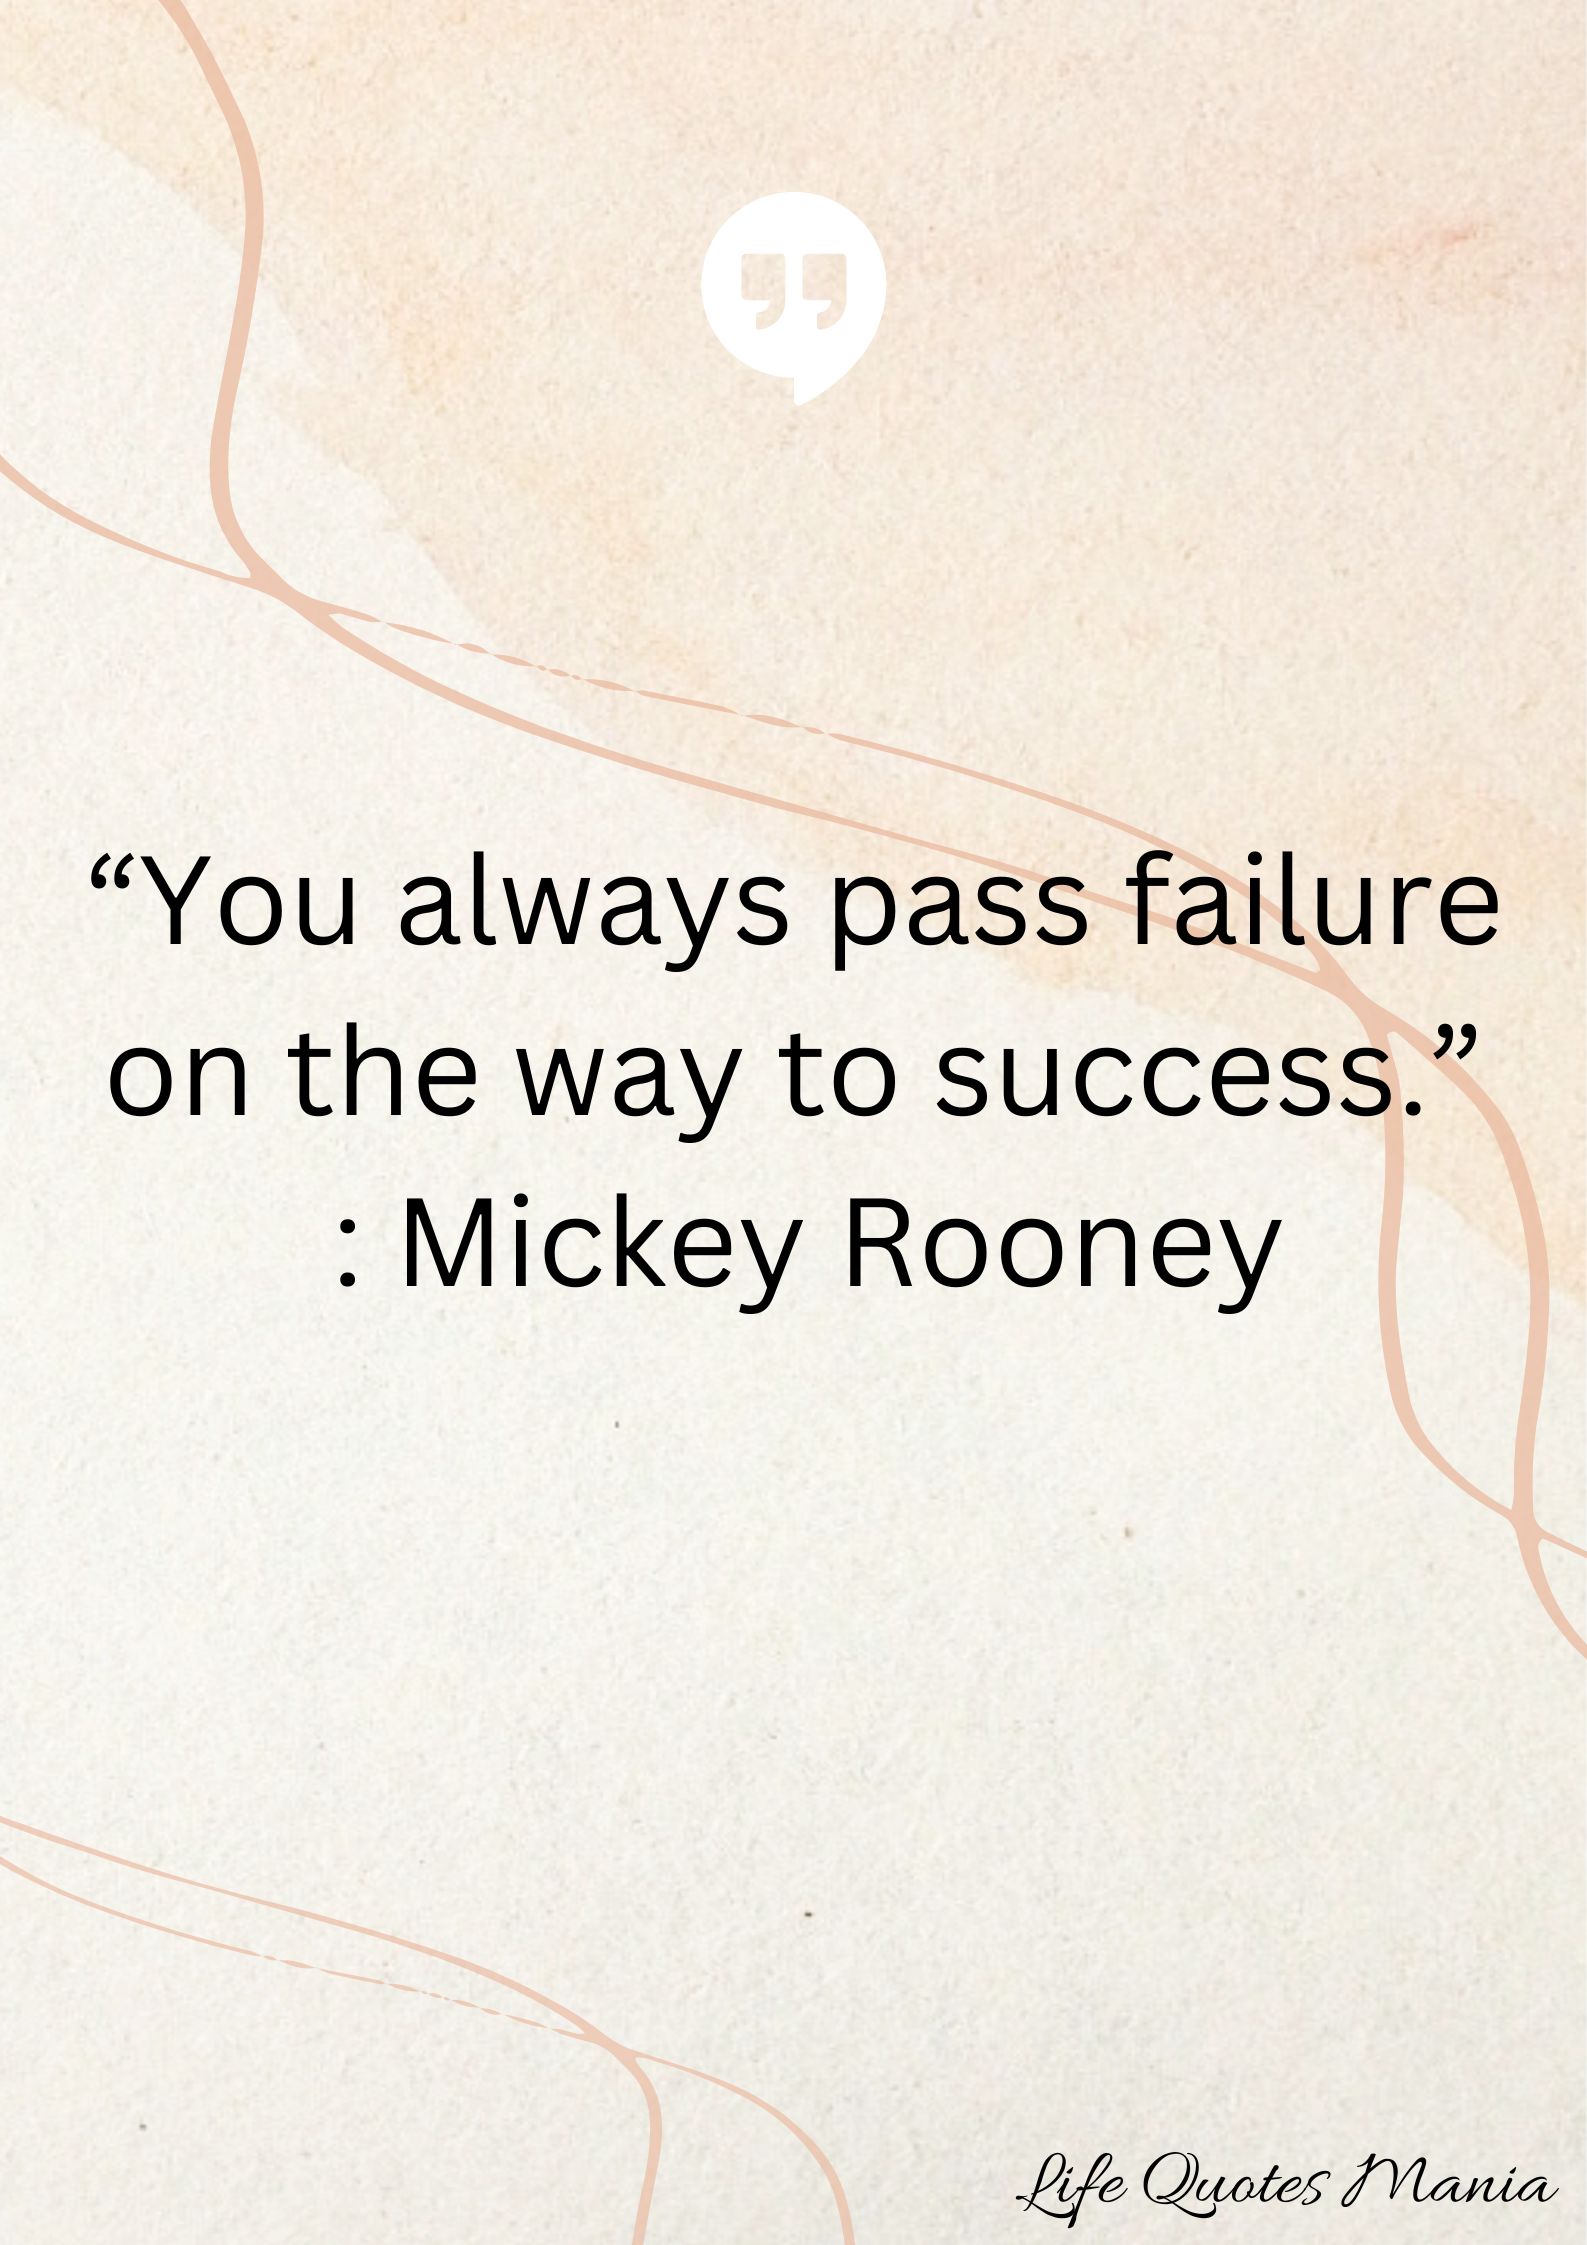 Attitude Quote - Mickey Rooney